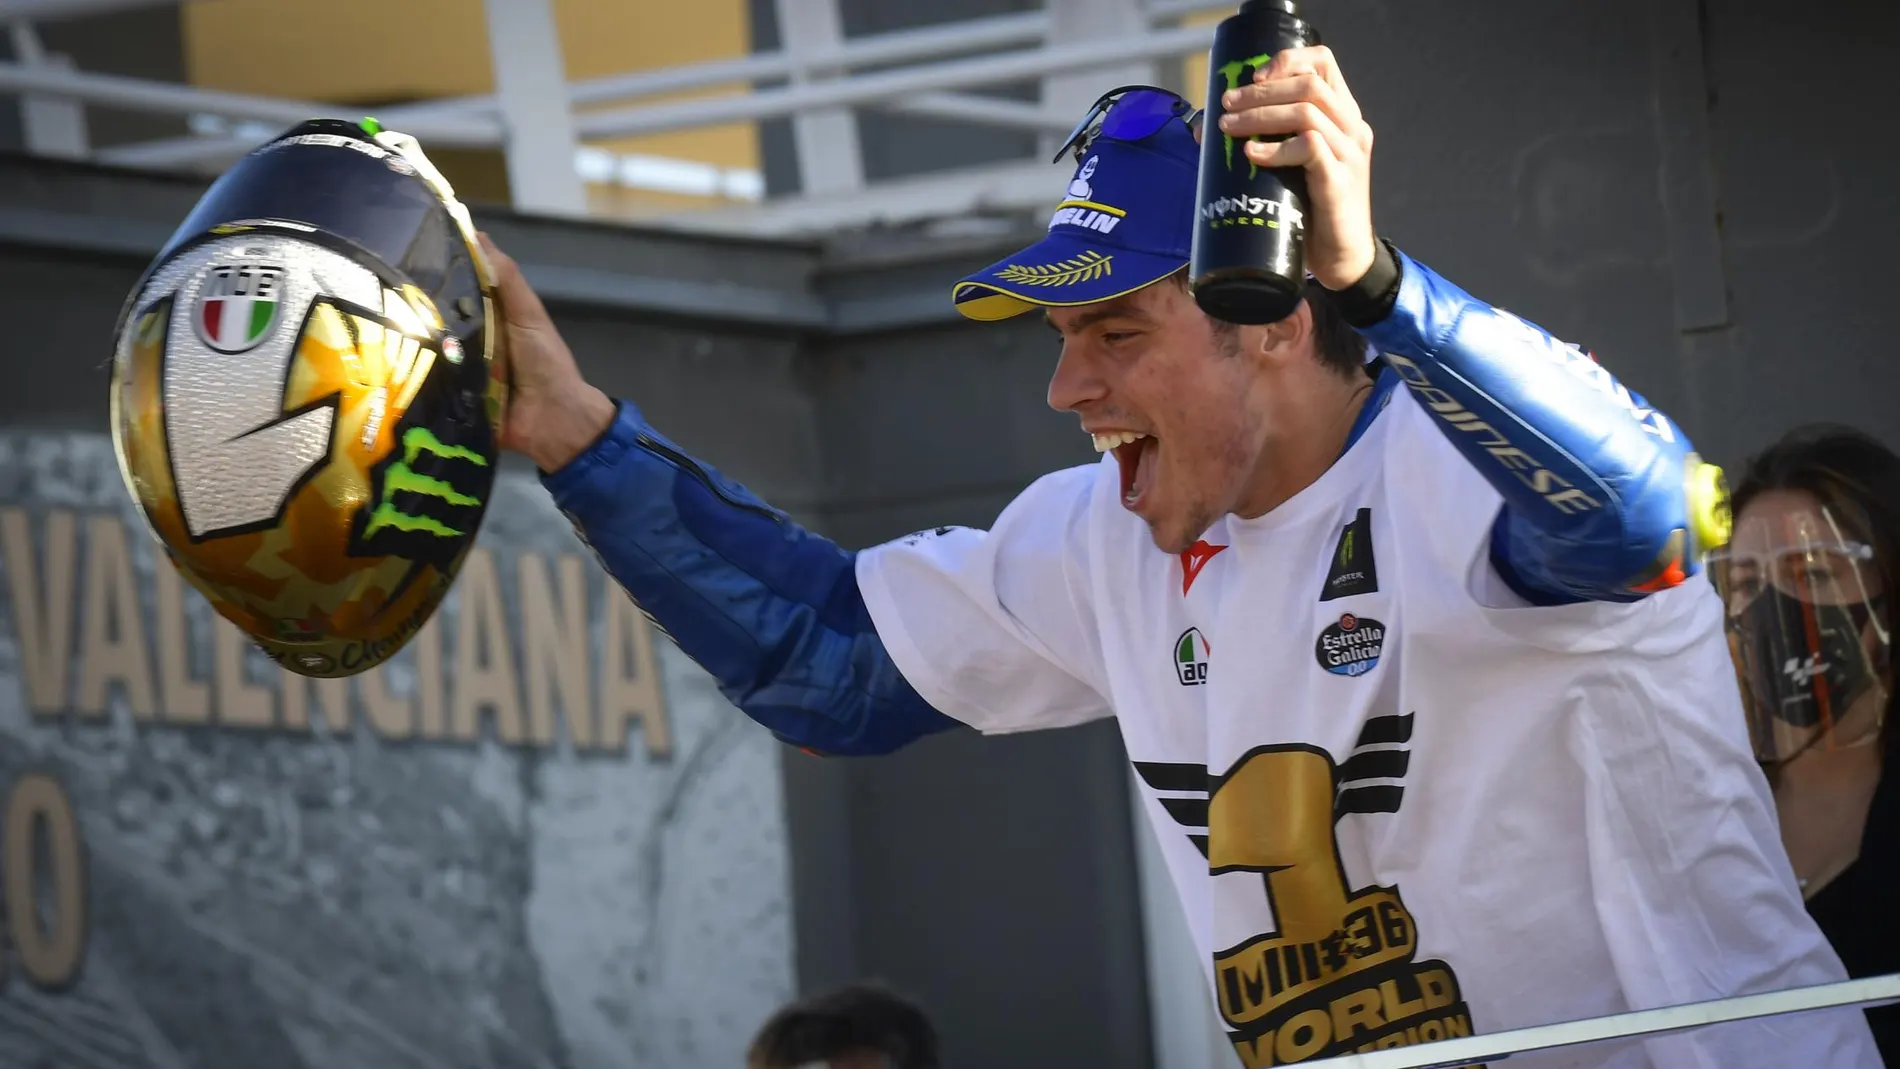 Joan Mir es el último campeón español en MotoGP